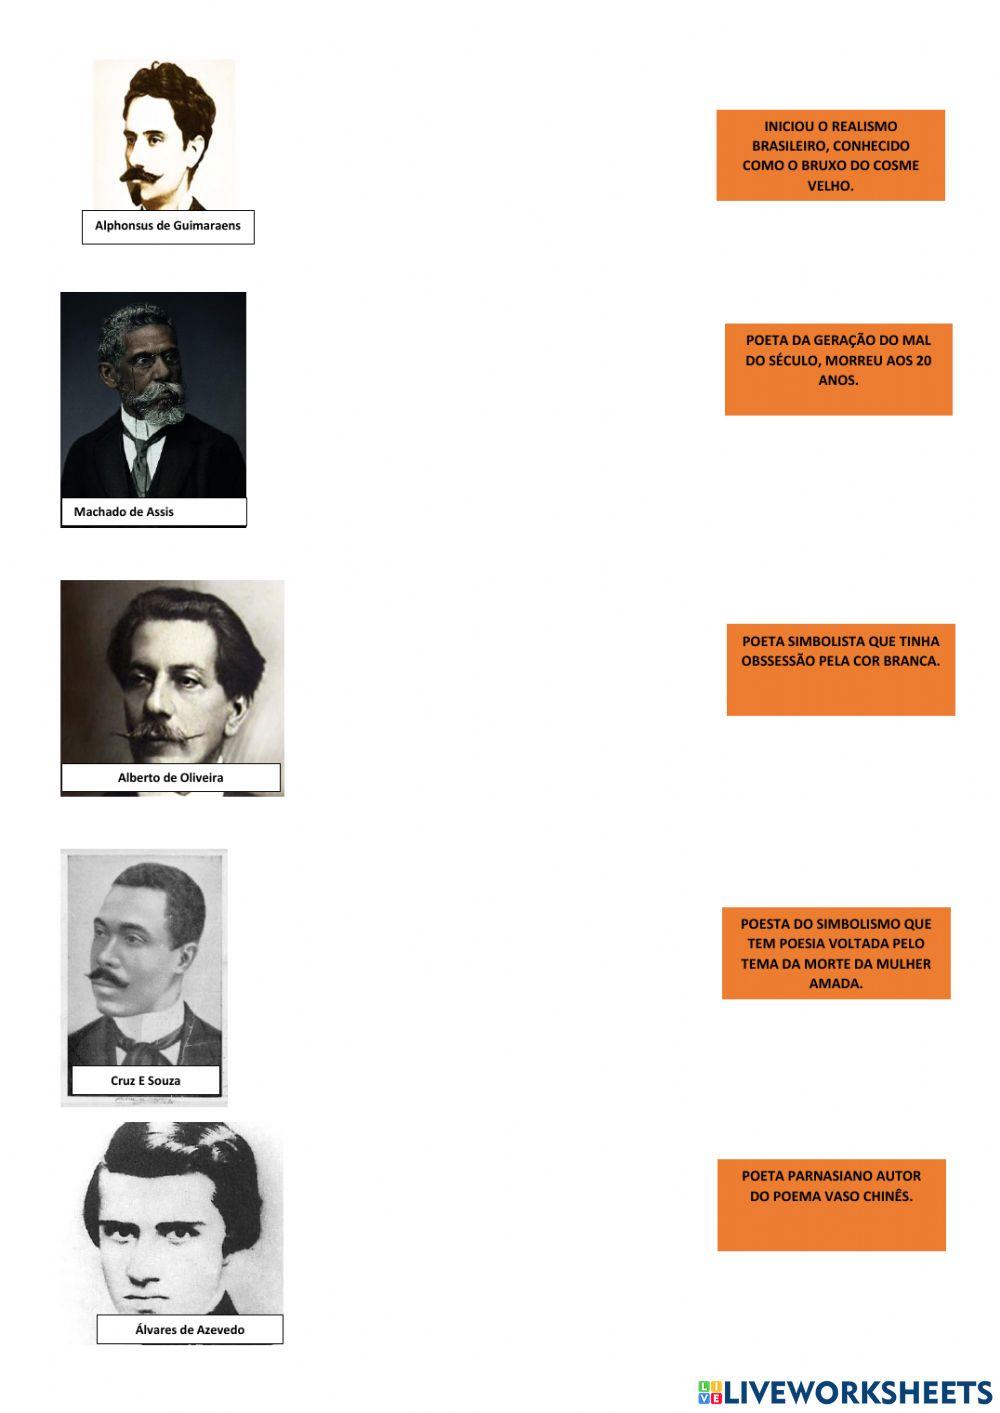 Autores Literários do Século XIX no Brasil